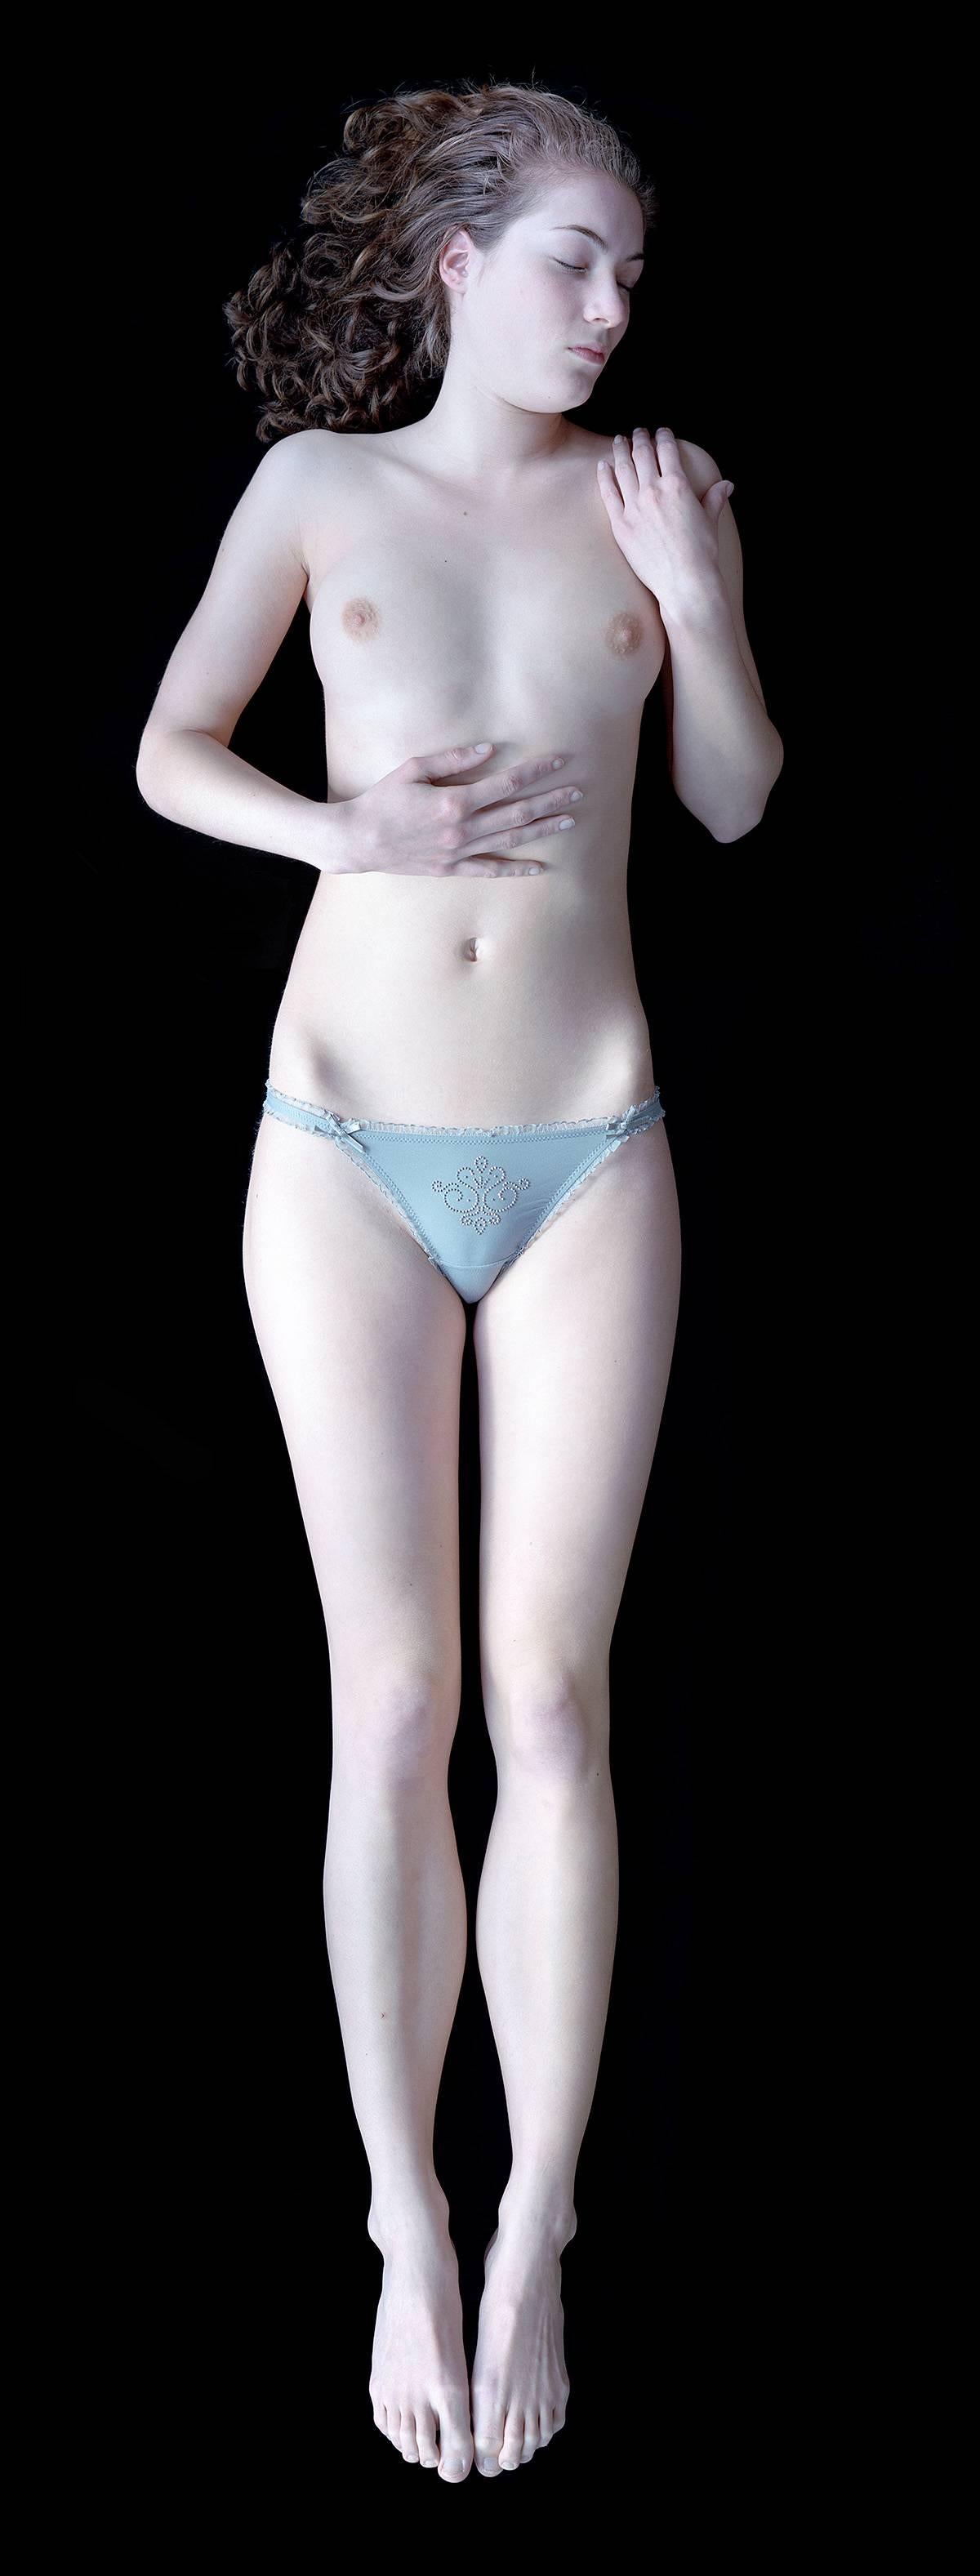 Carla van de Puttelaar Nude Photograph – 2008_23 - Die Cranach-Serie